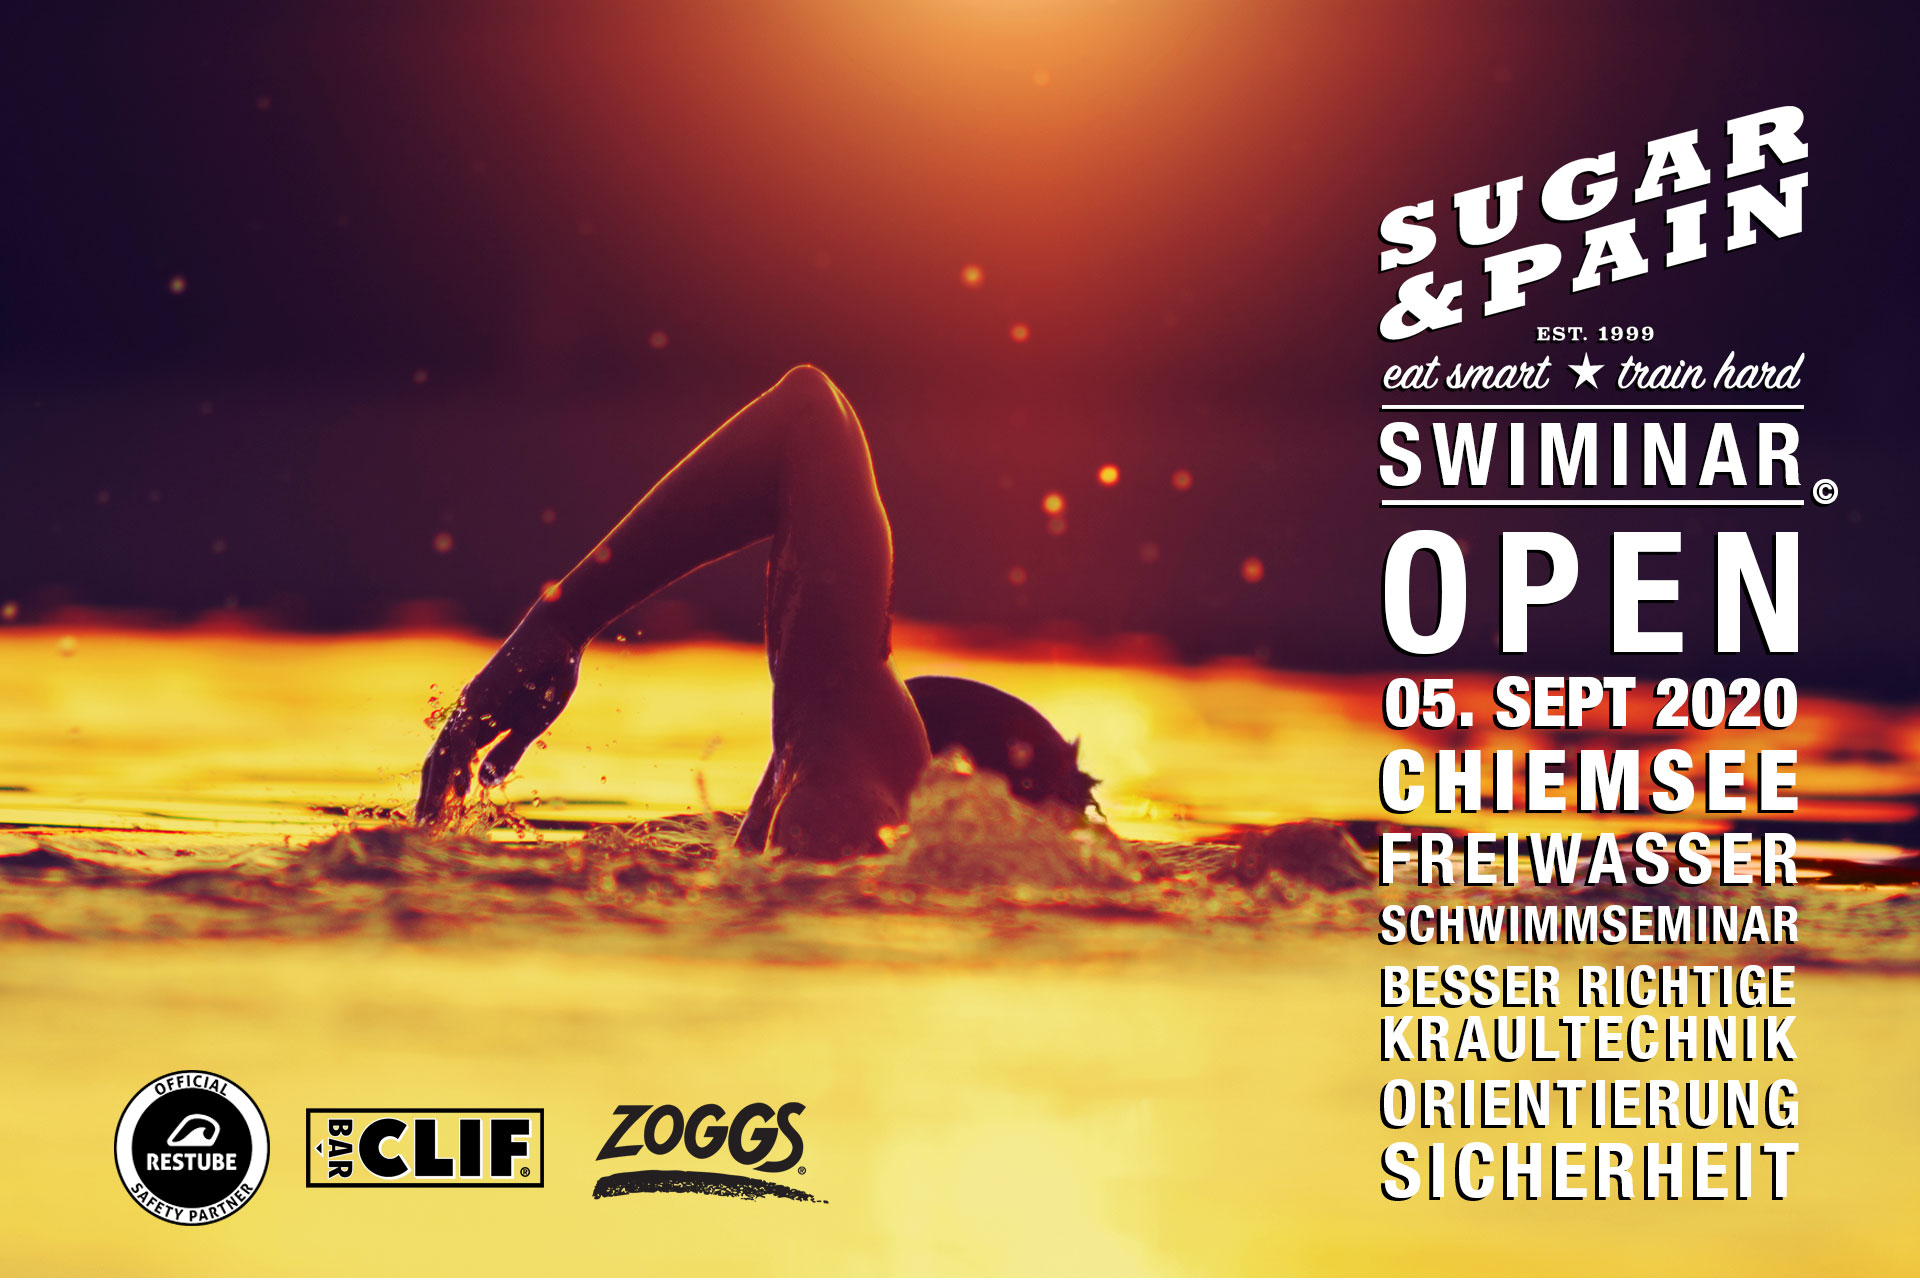 SWIMINAR #OPEN Chiemsee 03/20 Freiwasser Schwimmseminar Kraultechnik TITEL © SUGAR & PAIN / Adobe Stock